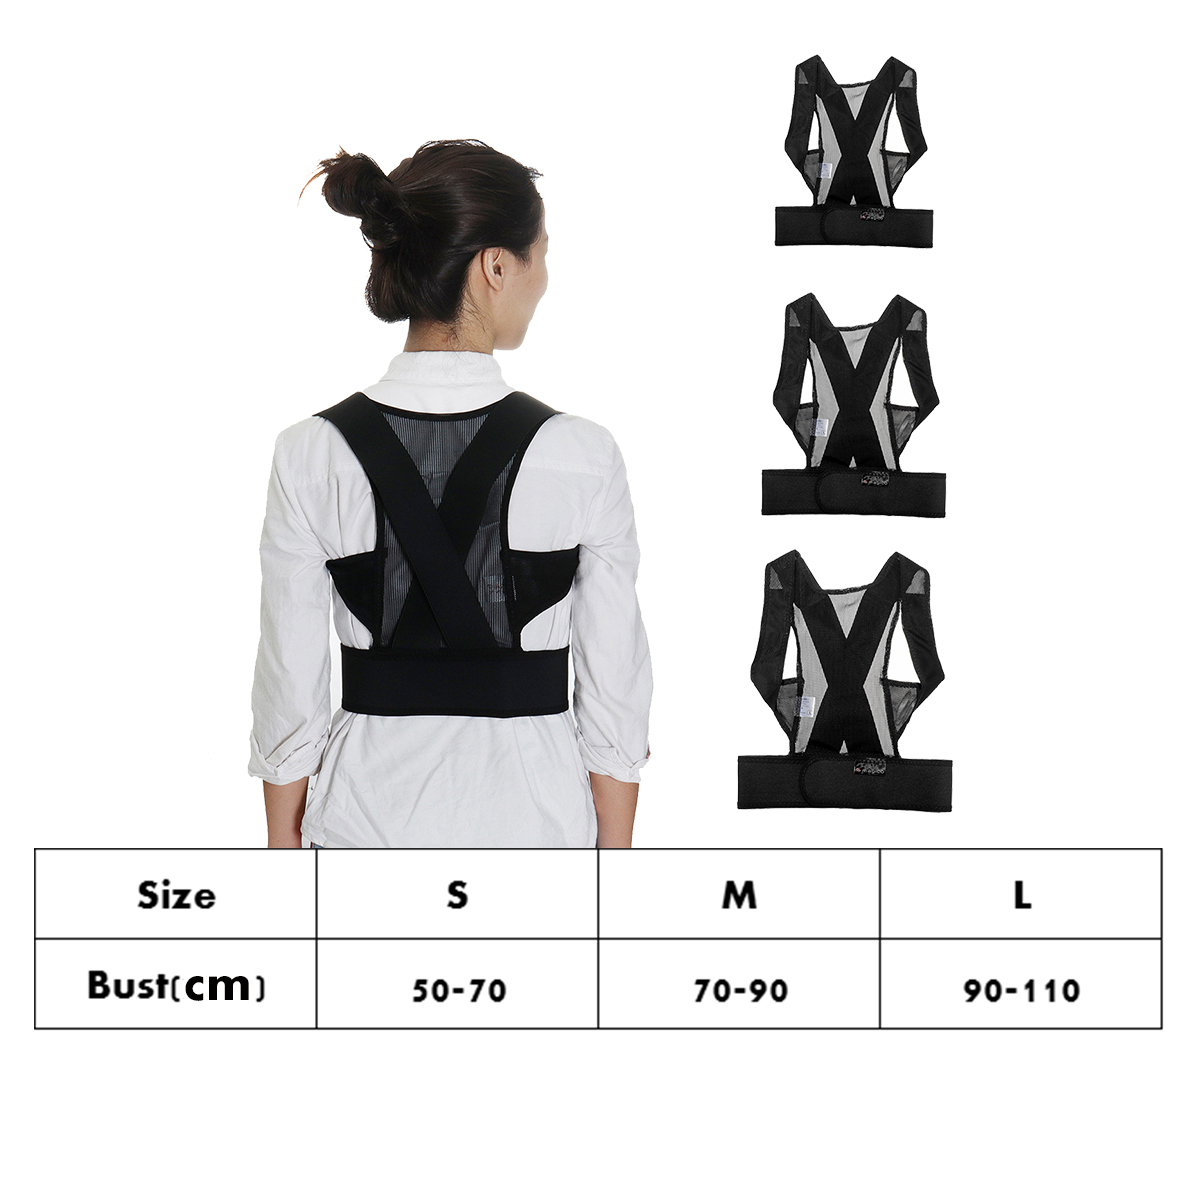 KALOAD-8-shape-Design-Adults-Kids-Adjustable-Therapy-Posture-Corrector-Shoulder-Back-Support-Belt-1455622-1